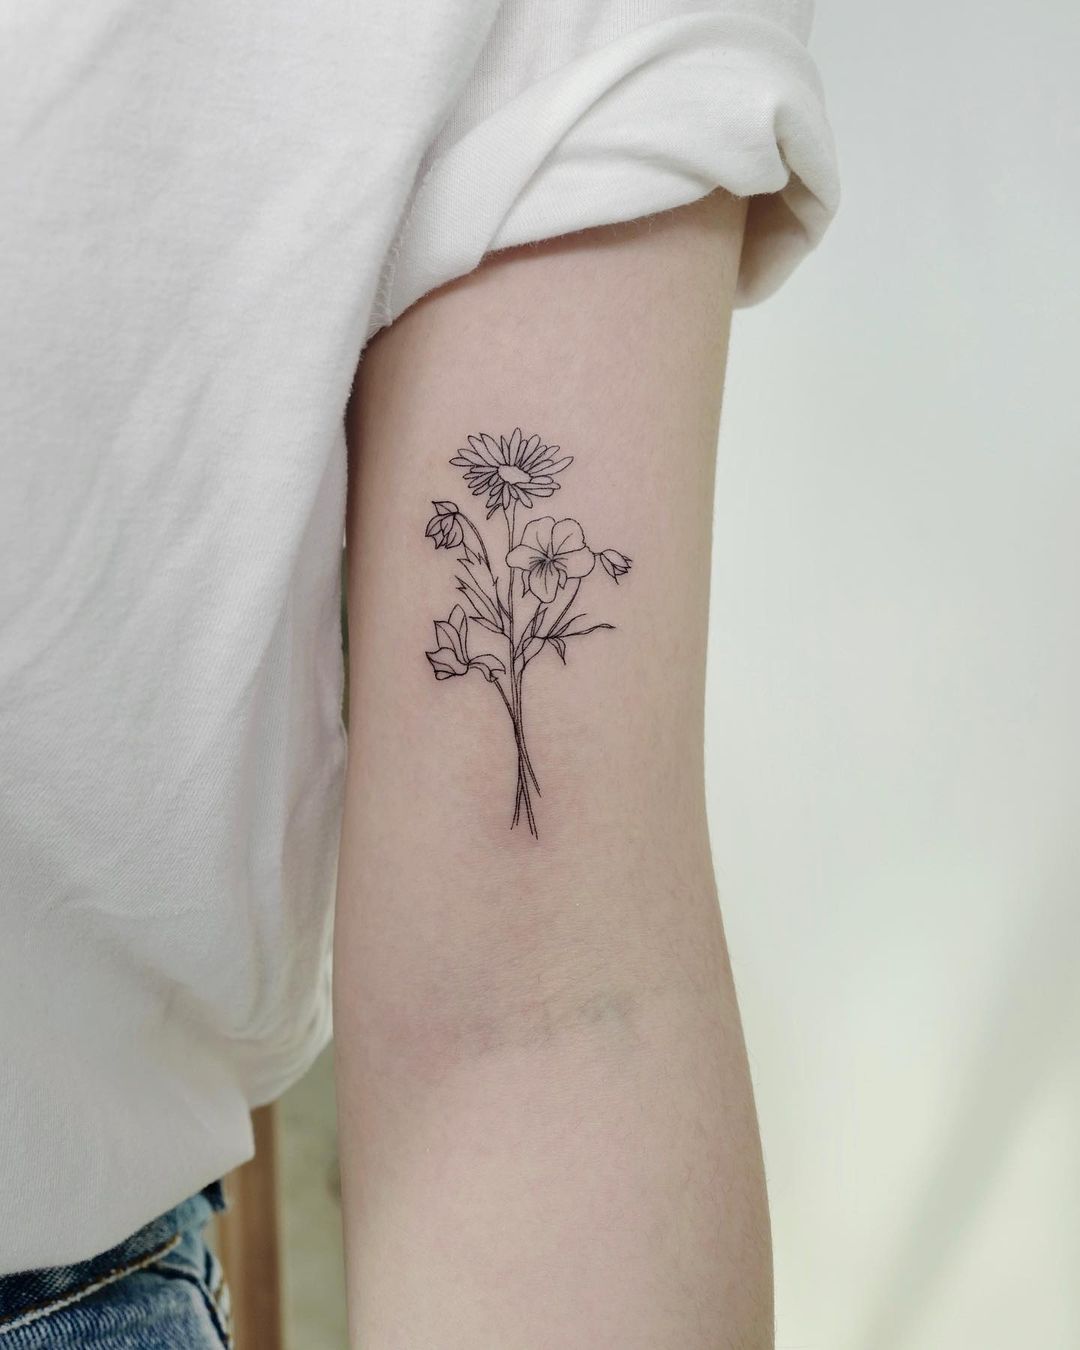 Tatuaje pequeño, sencillo, negro y blanco.